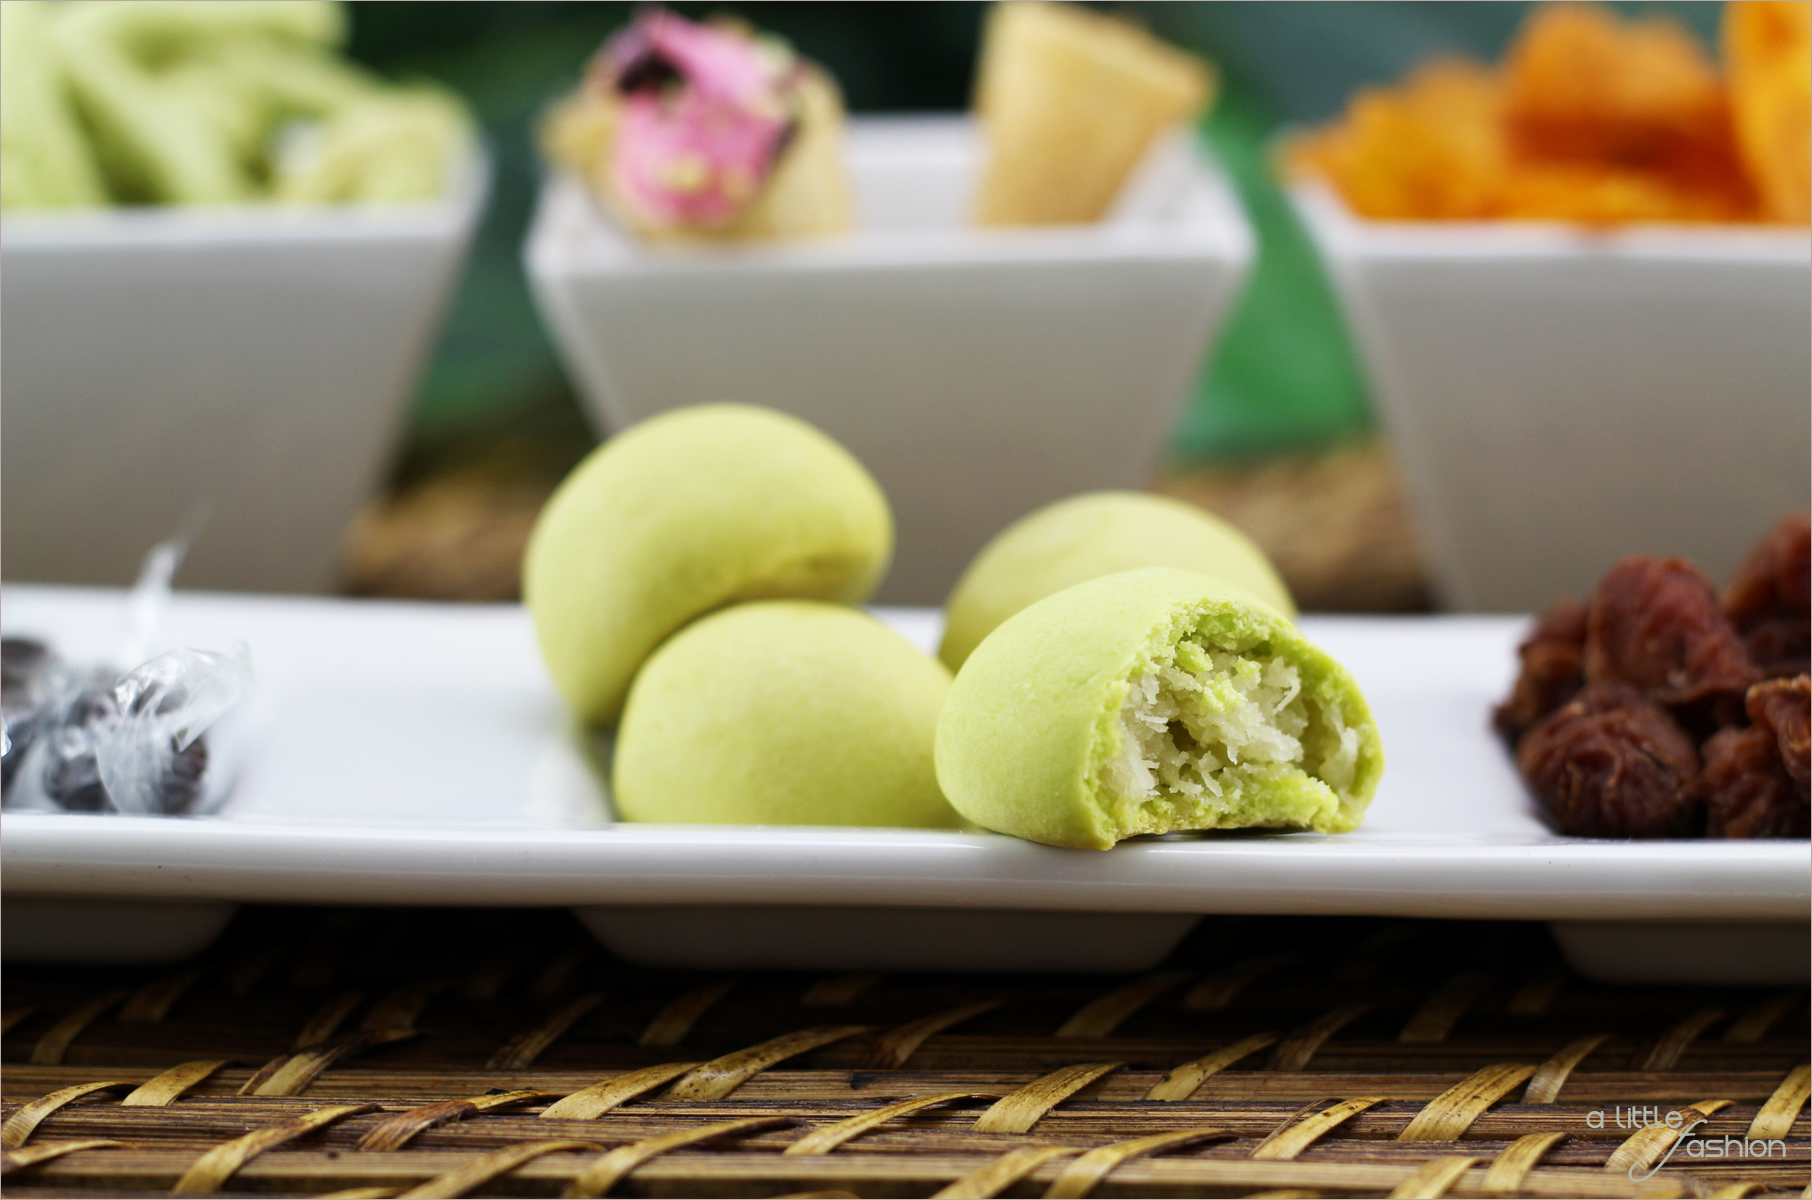 Von Moji und Durian - Einblicke in Thailands Snack-Kultur | A Little Fashion | https://www.filizity.com/food/von-moji-und-durian-einblicke-in-thailands-snack-kultur